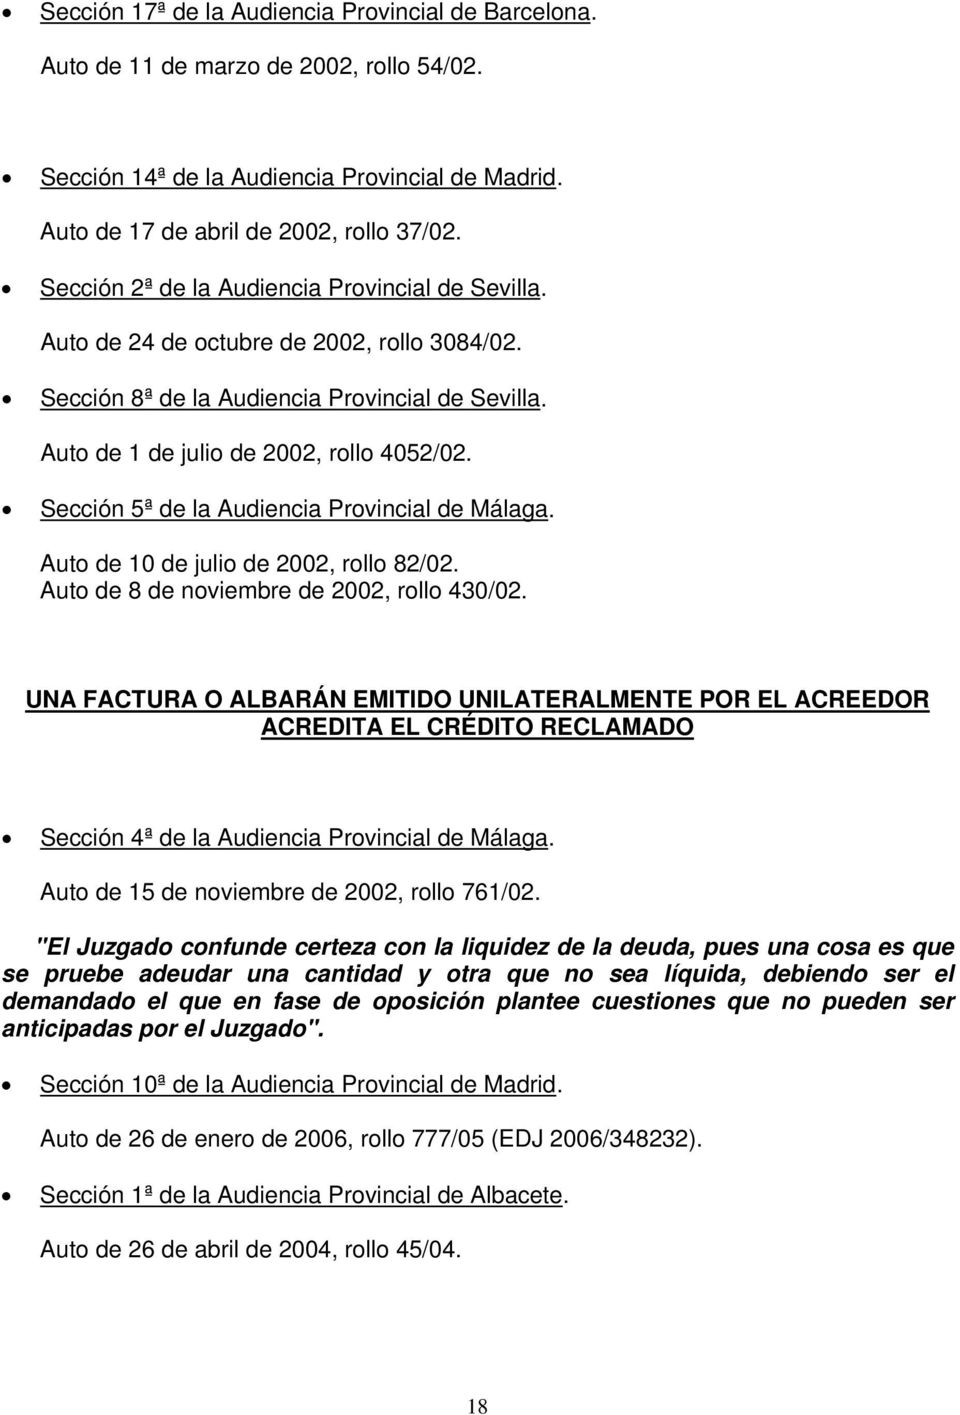 Sección 5ª de la Audiencia Provincial de Málaga. Auto de 10 de julio de 2002, rollo 82/02. Auto de 8 de noviembre de 2002, rollo 430/02.